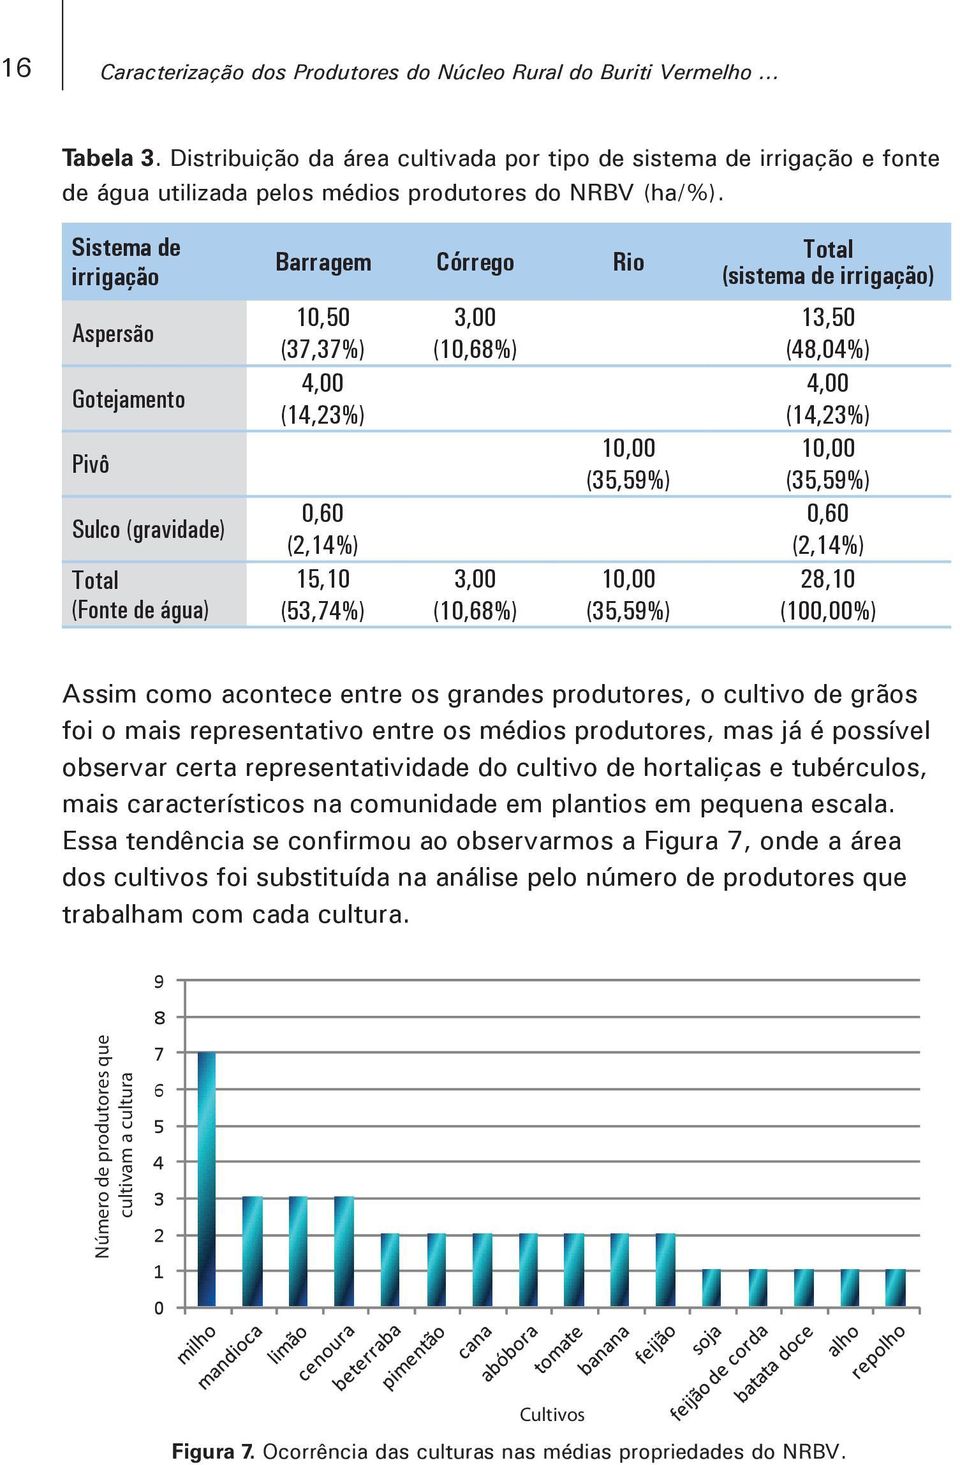 Sistema de irrigação Aspersão Gotejamento Pivô Sulco (gravidade) Total (Fonte de água) Barragem Córrego Rio 10,50 (37,37%) 4,00 (14,23%) 0,60 (2,14%) 15,10 (53,74%) 3,00 (10,68%) 3,00 (10,68%) 10,00